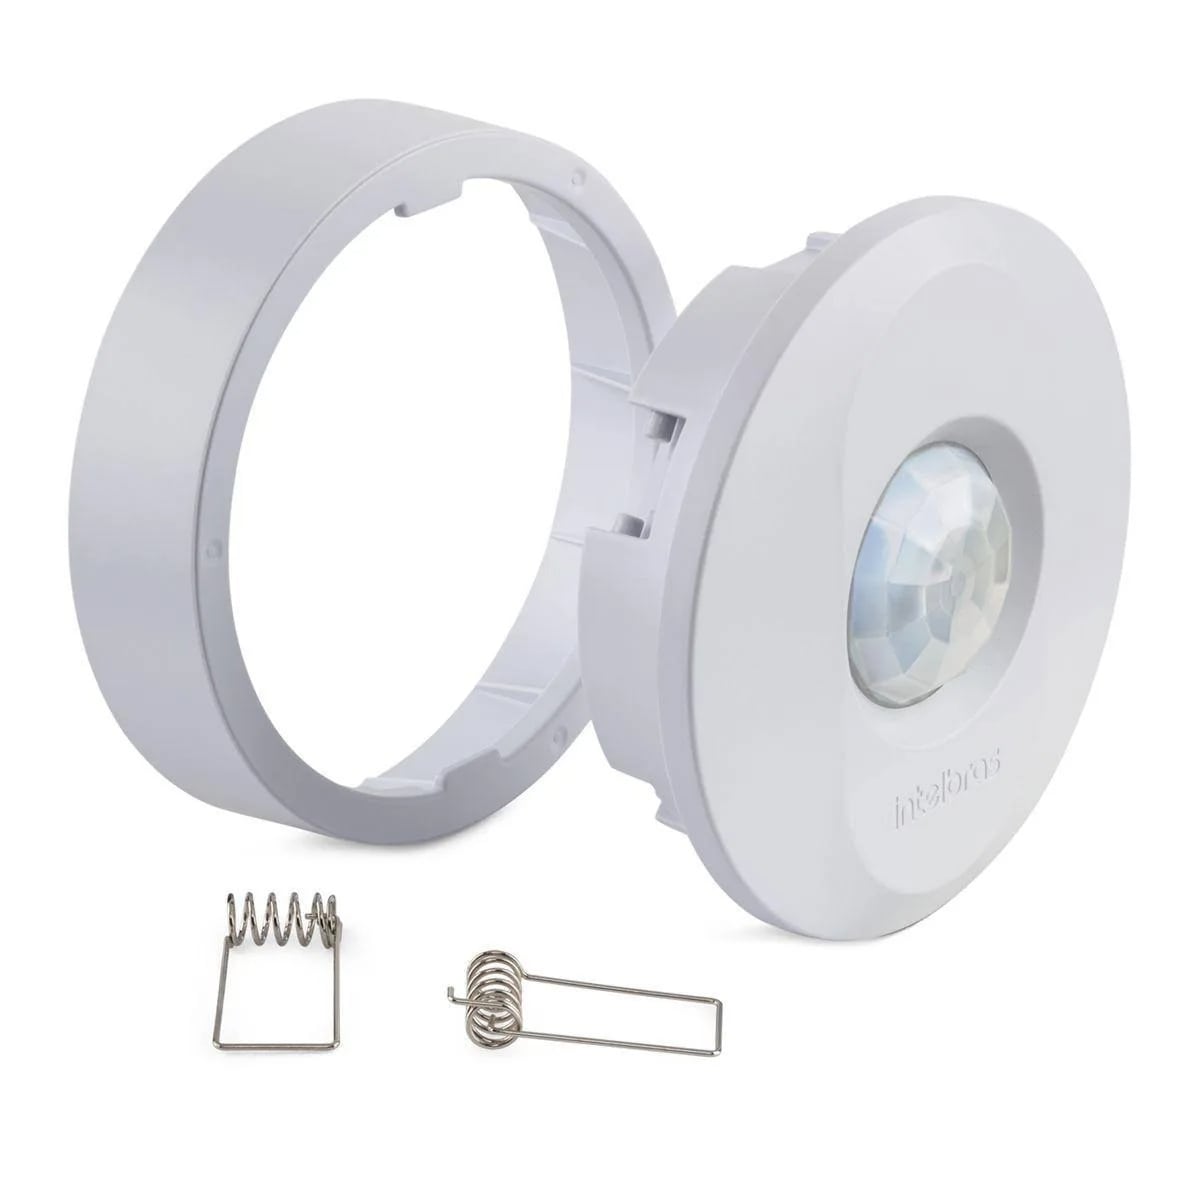 Sensor de Presença para Iluminação Intelbras ESPi 360 Fotocélula para Lâmpada Embutir / Sobrepor